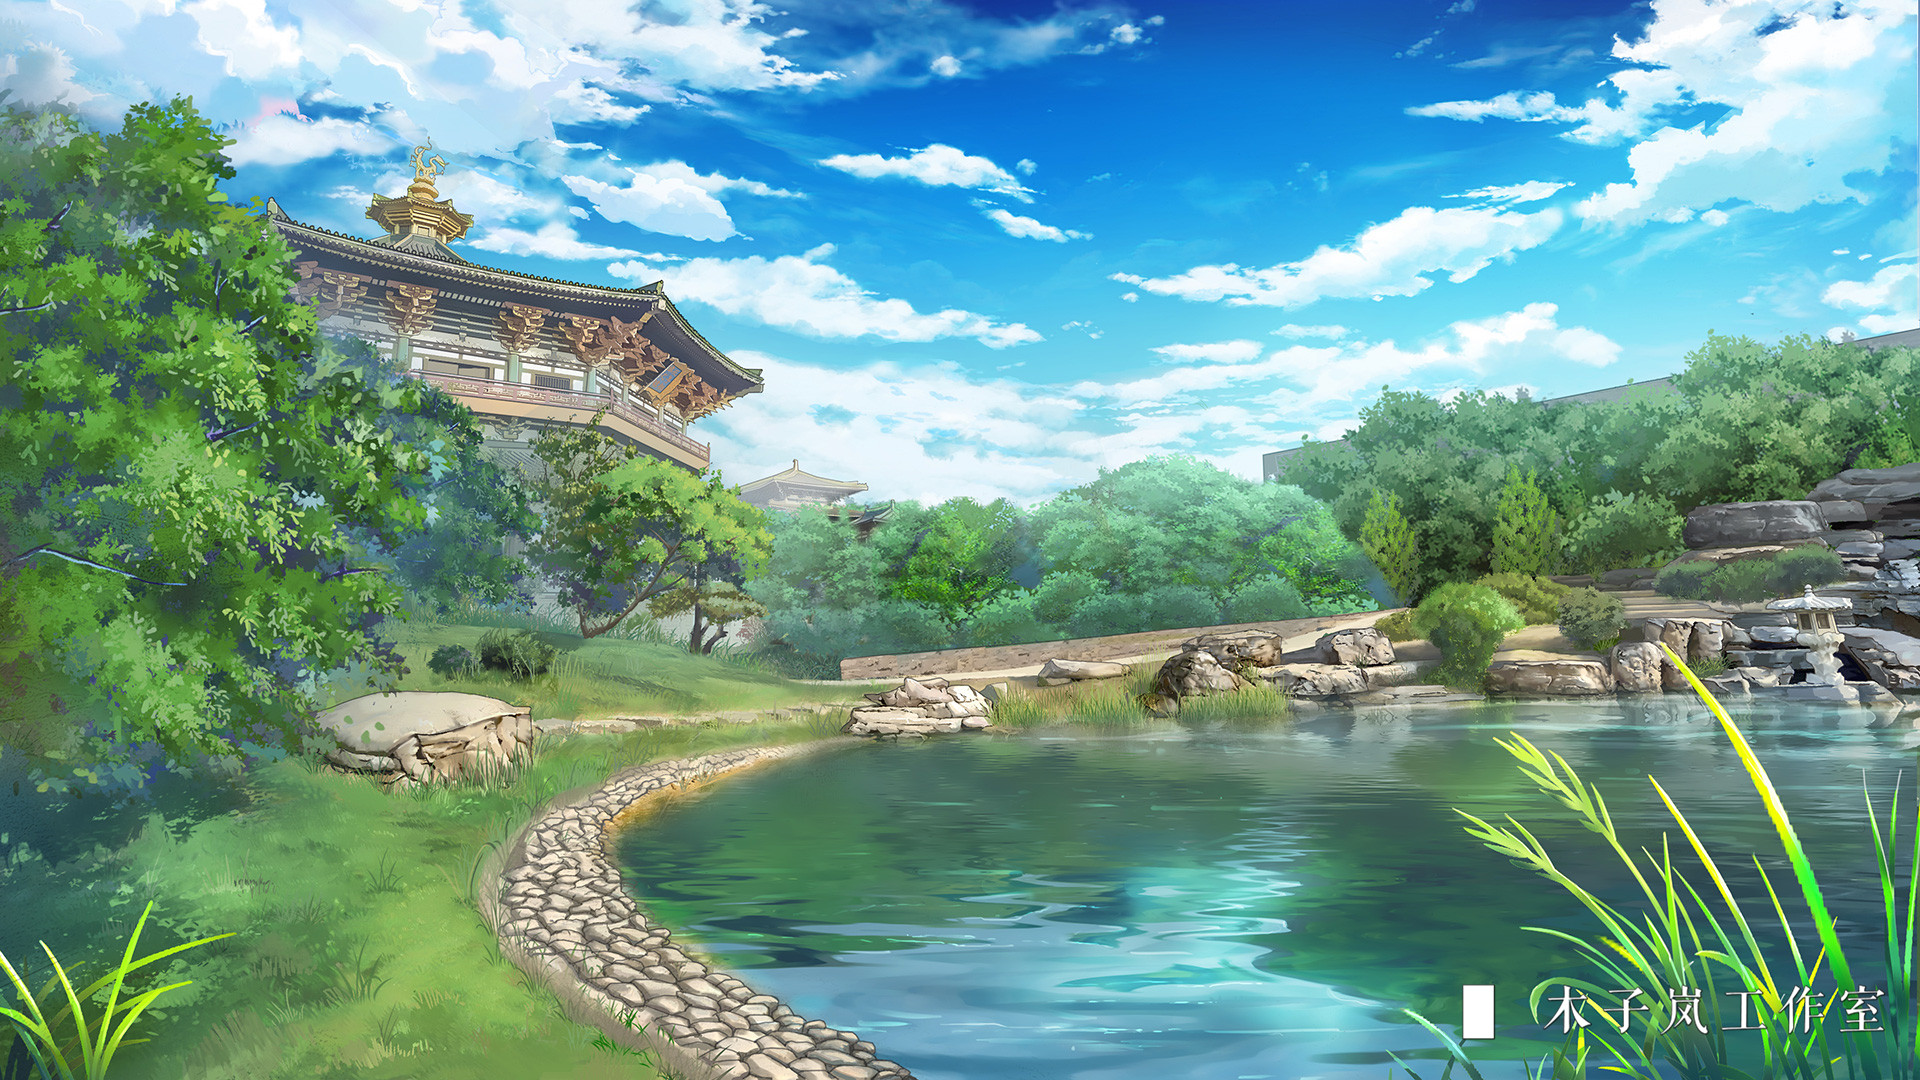 Một nguồn cảm hứng vô tận cho những nhân vật trong anime đó chính là hồ nước trong anime đẹp. Với phong cảnh đẹp, một màn hình máy tính với hình ảnh hồ nước vừa thư giãn vừa đầy sức sống sẽ là sự lựa chọn hoàn hảo cho bạn.